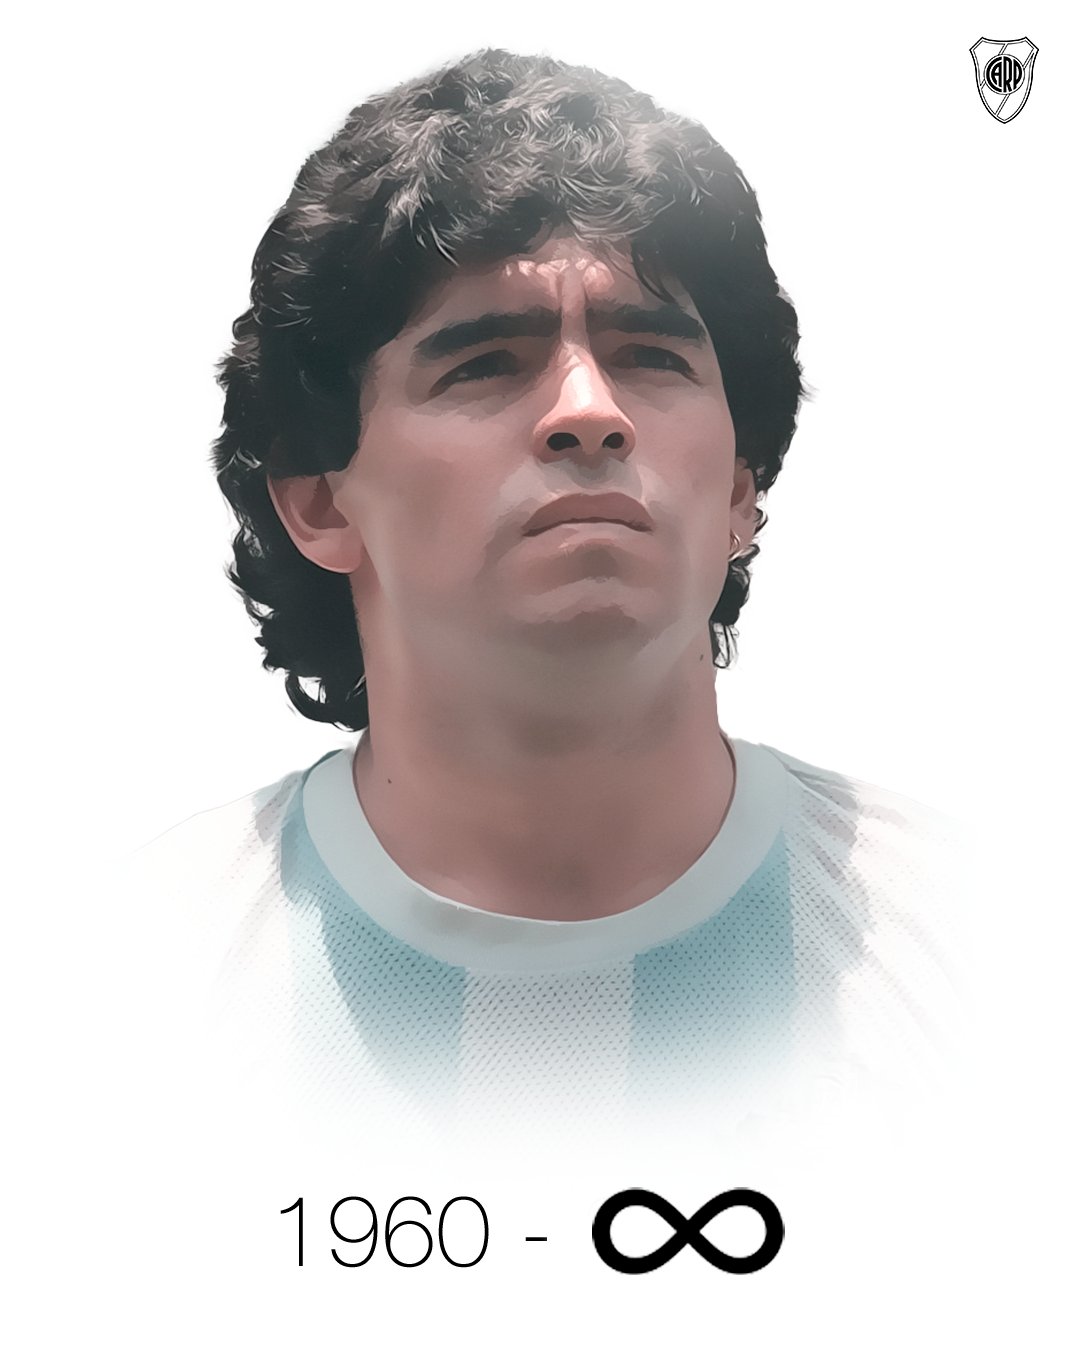 Maradona grazie per aver reso l’aldiquà un posto migliore